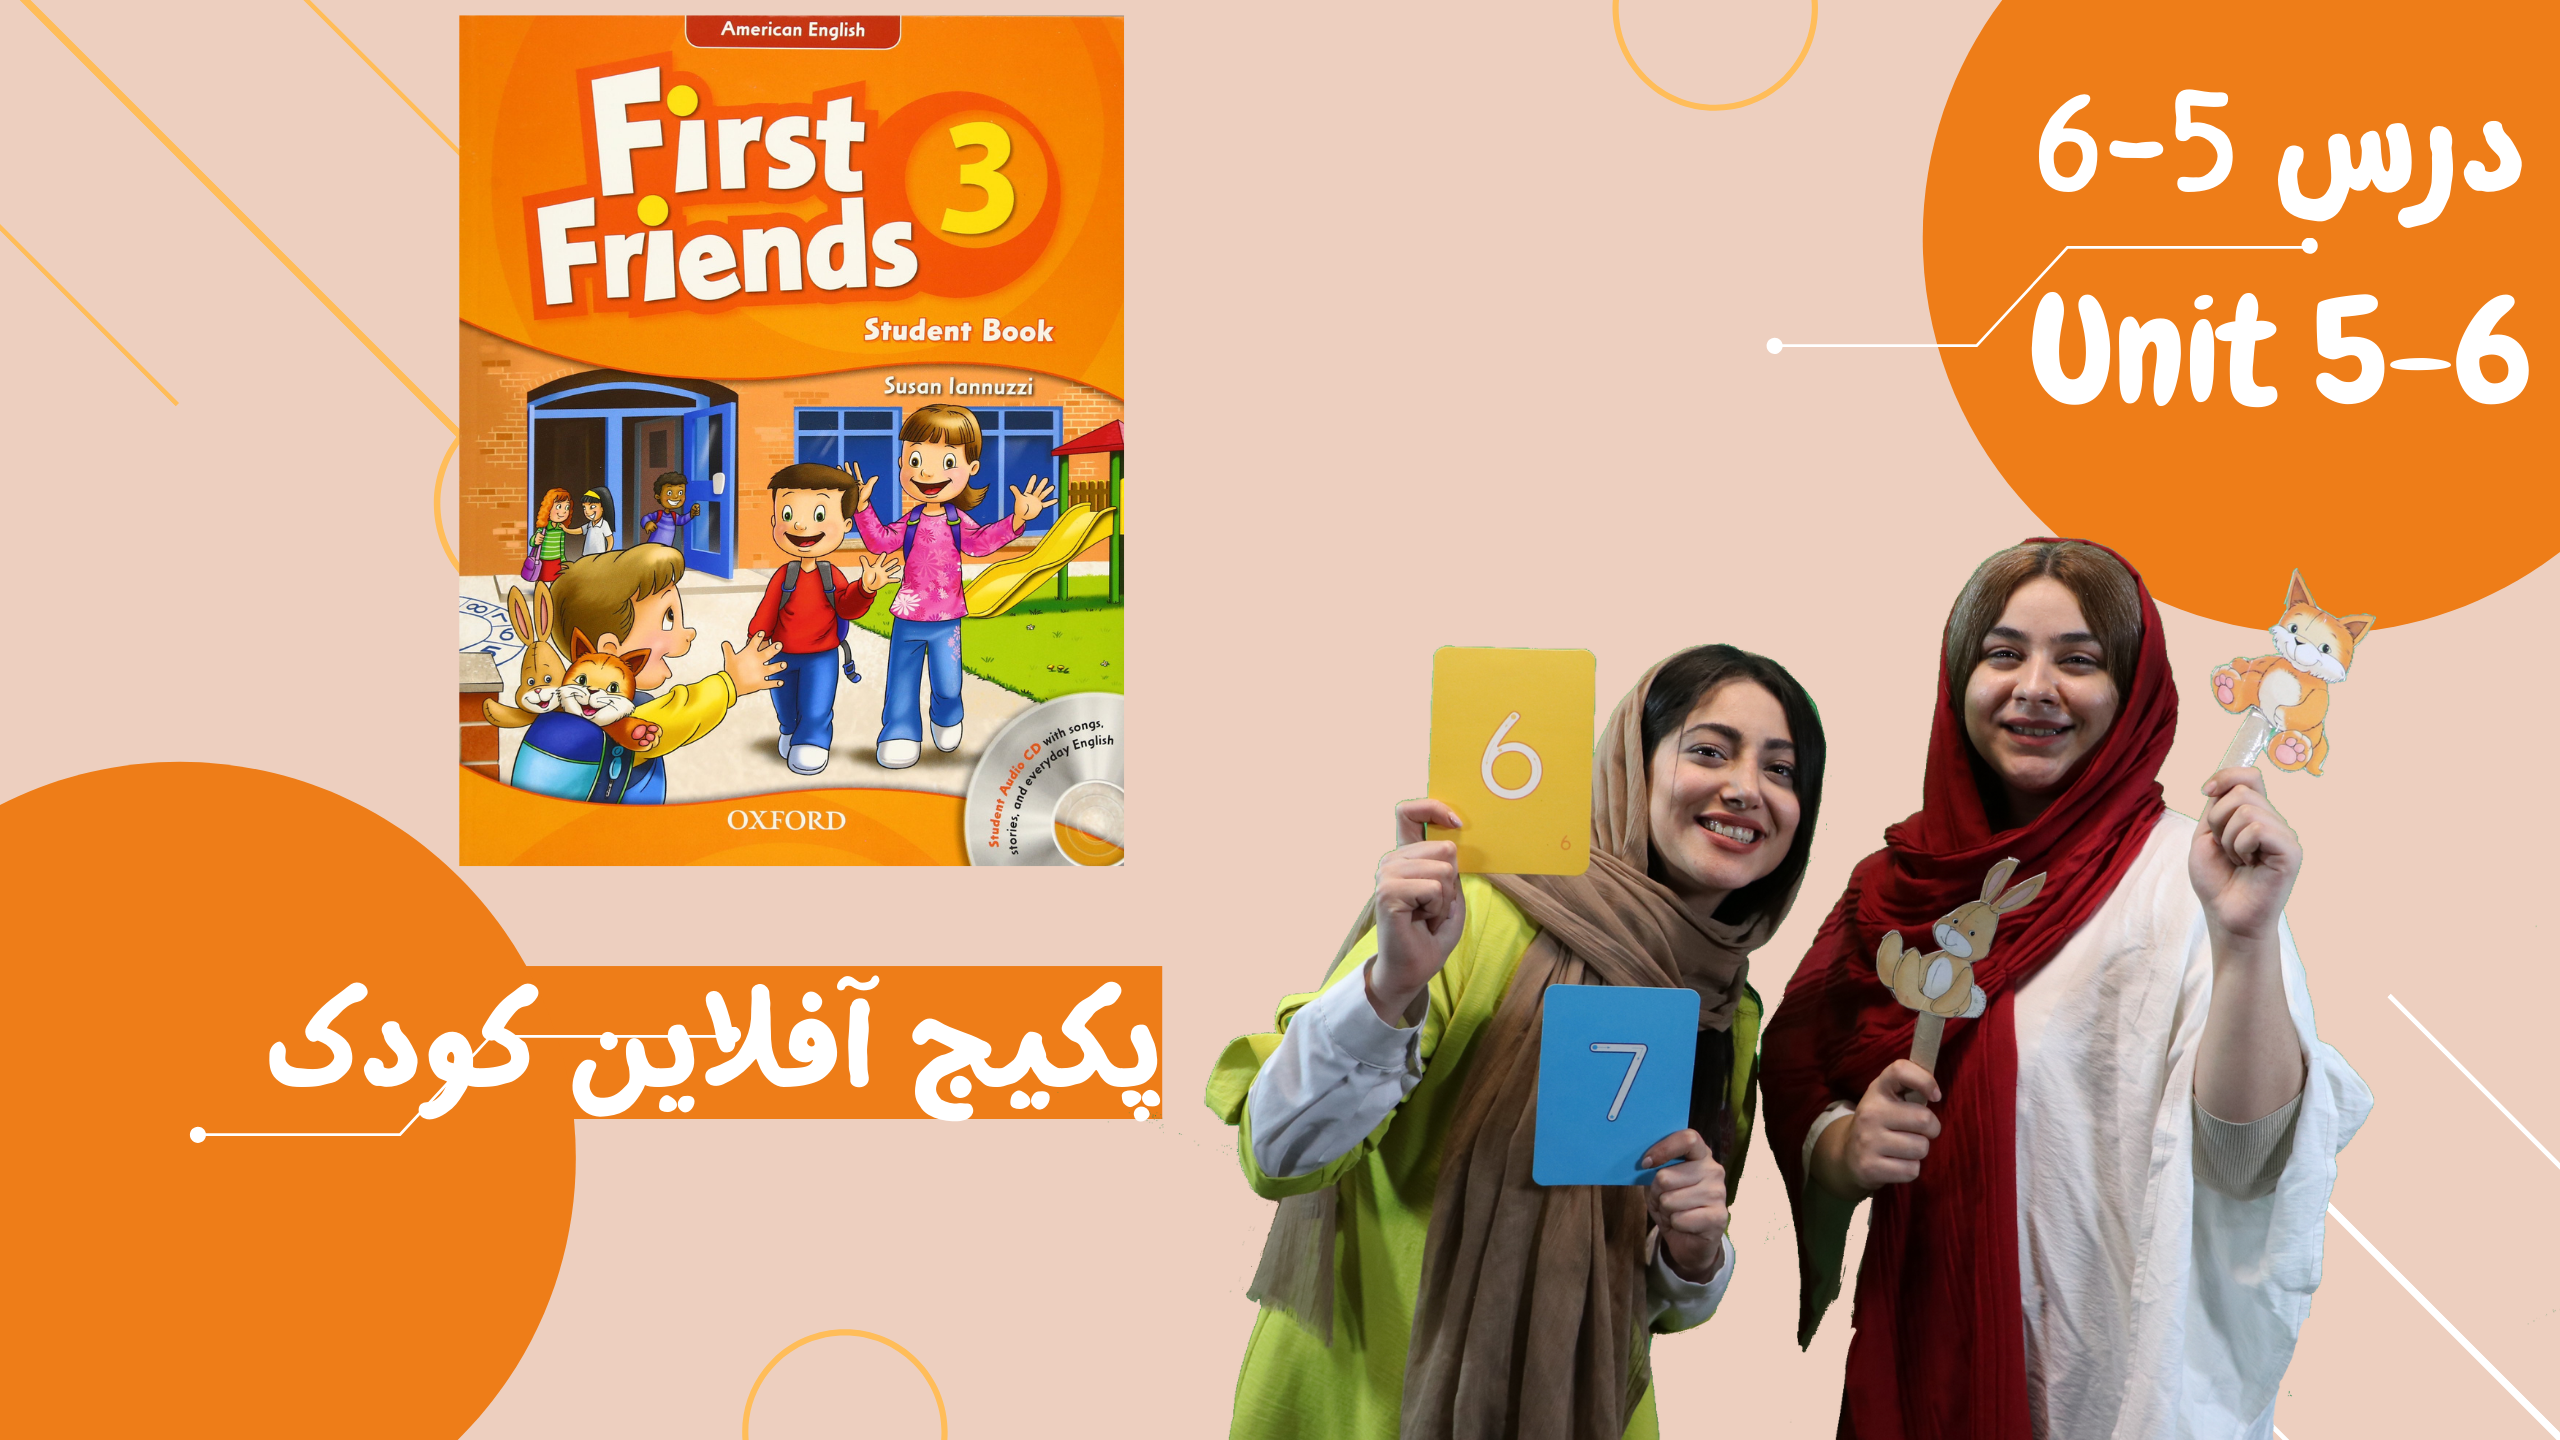 7-6-offlineclass-first friends3 unit5-کلاس آفلاین فرست فرندز3 دروس5-6-7